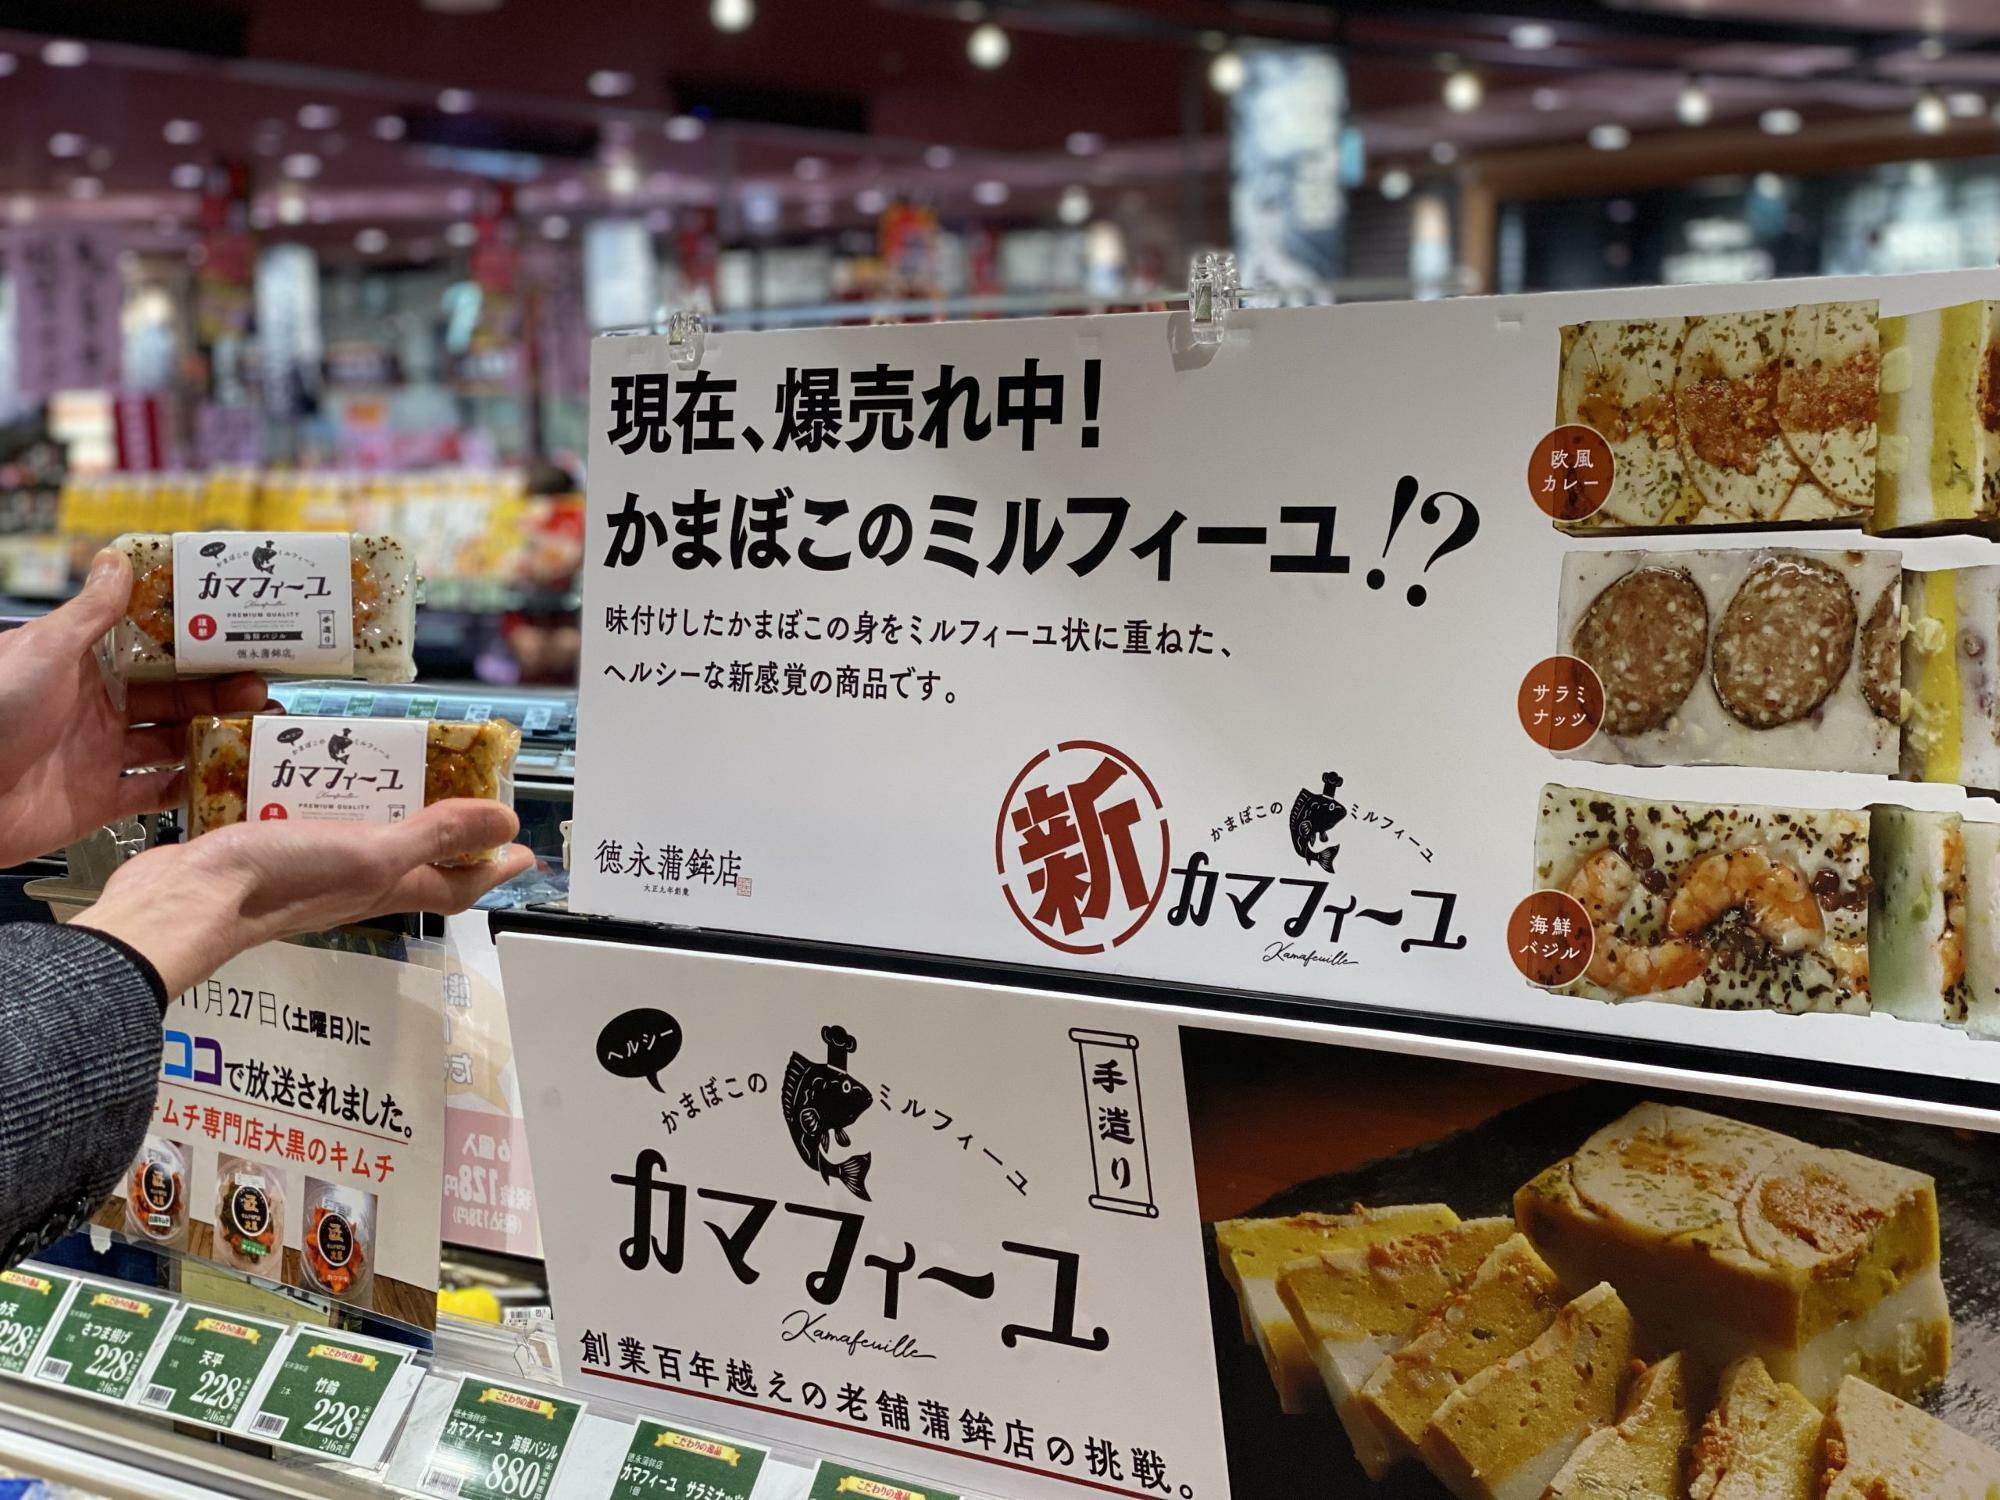 ※徳永蒲鉾店で購入する時と価格が違います。フードウェイサクラマチ店では、各種950円(税込)